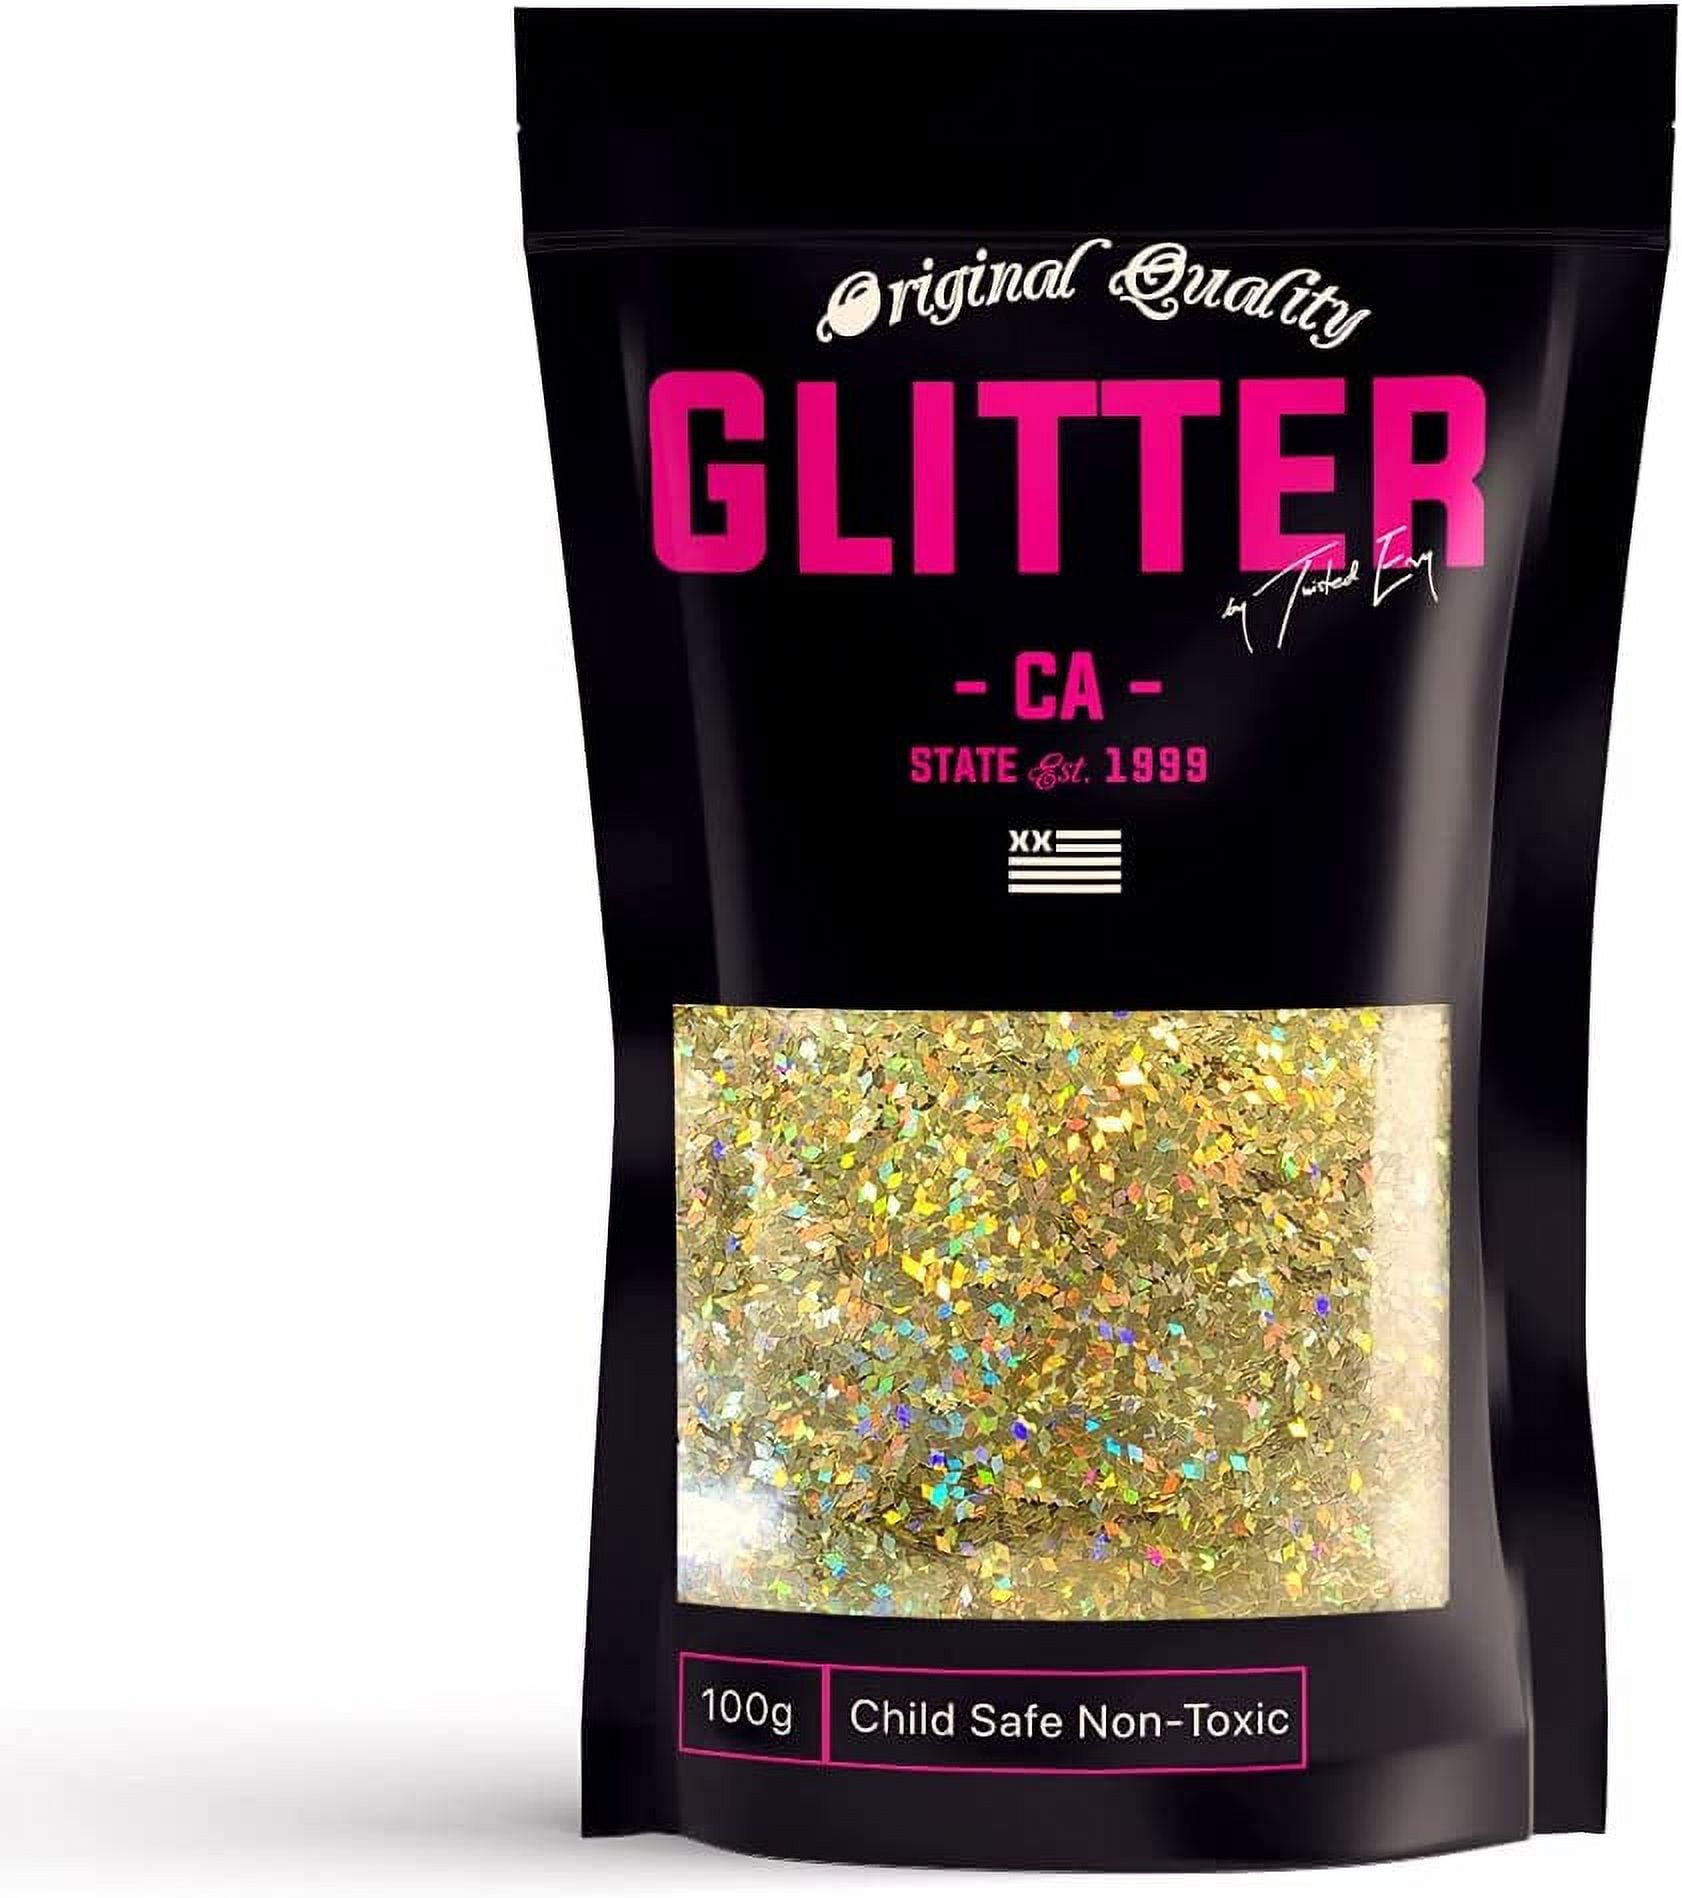 Sulyn Extra Fine Glitter for Crafts, 24 Karat Gold, 2.5 oz 